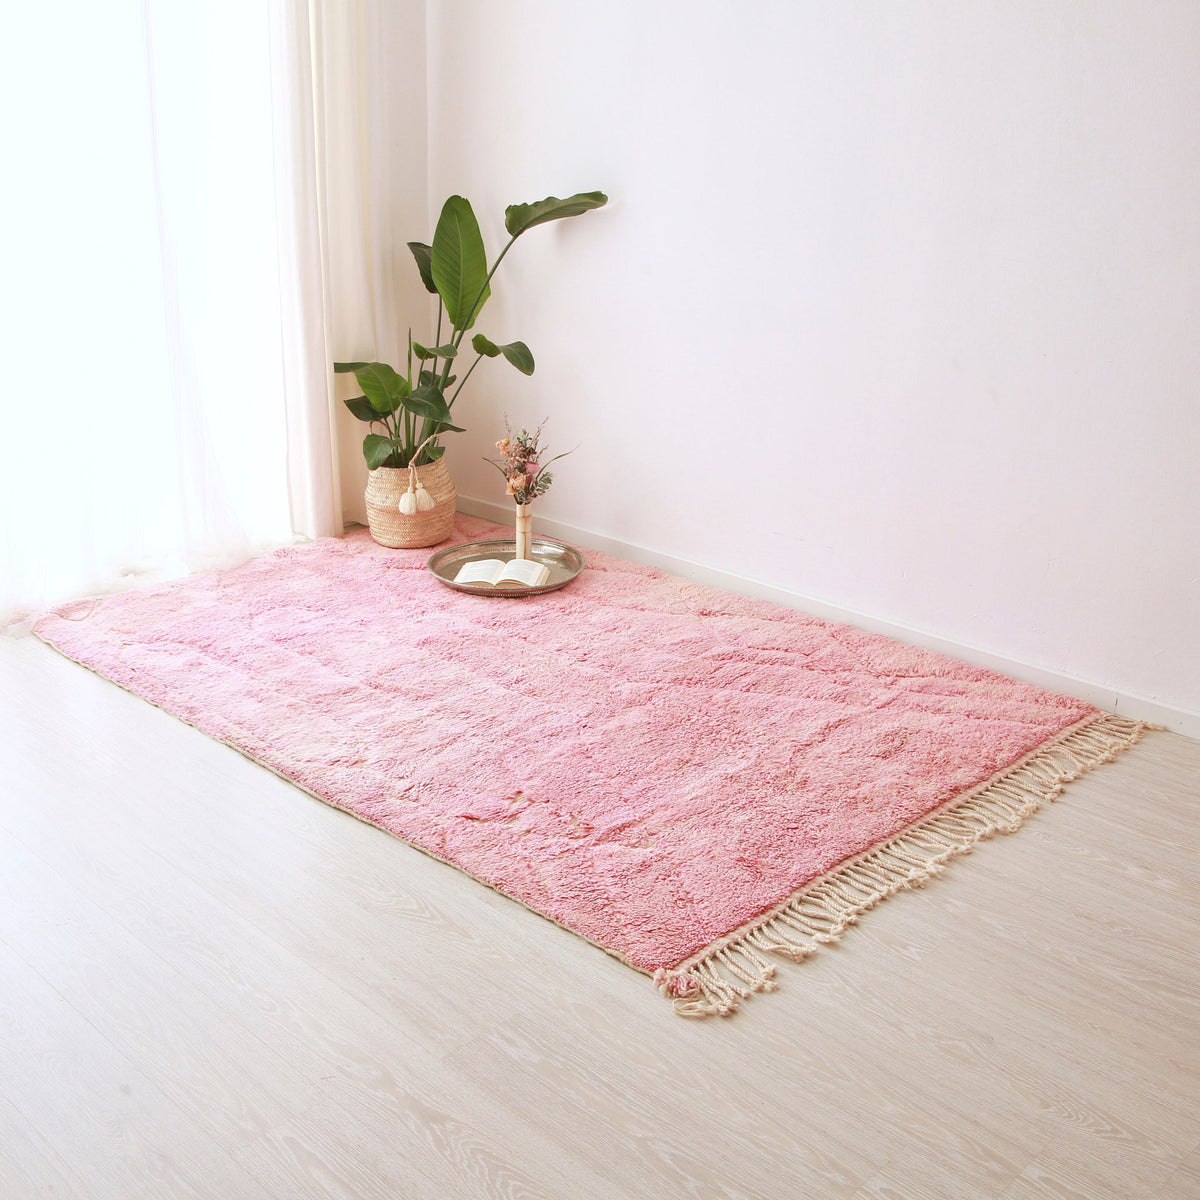 Tappeto beni mrirt di colore rosa e con un lunga frangia disteso sul pavimento. Sul tappeto sono presenti un pianta e un patto in argento con sopra un libro aperto e una composizione floreale